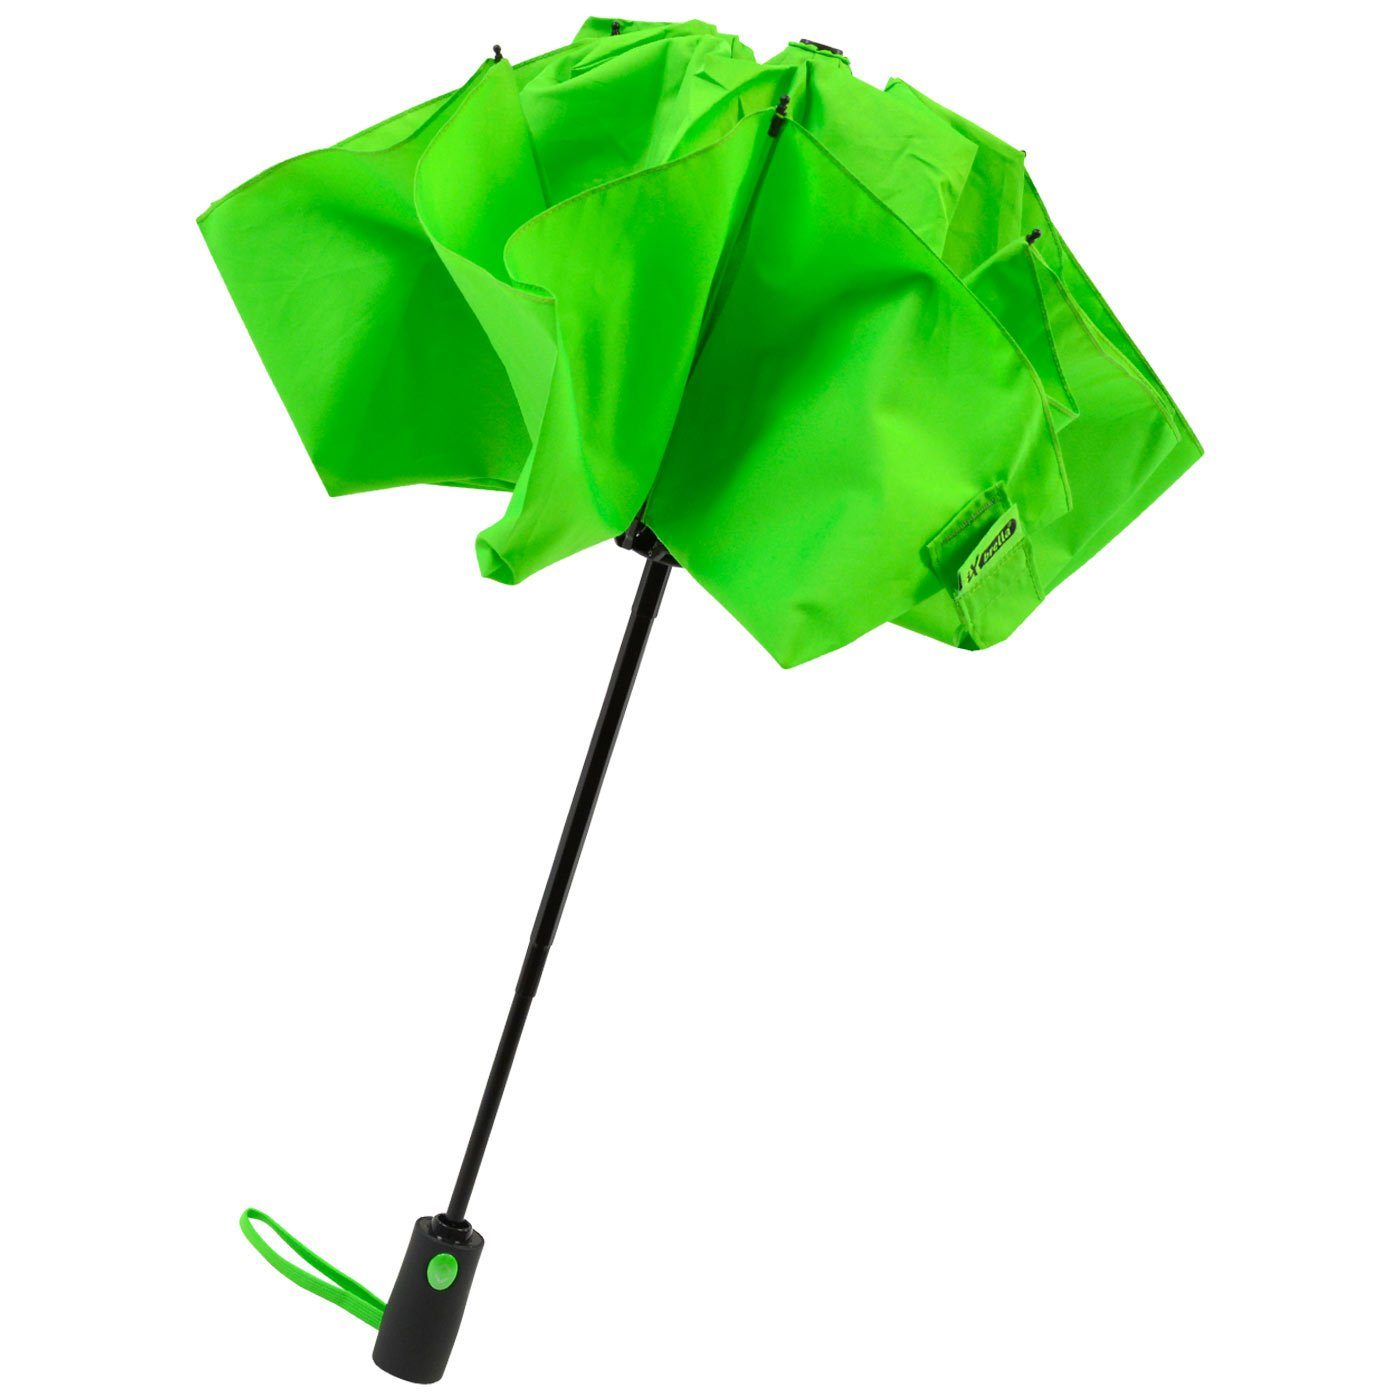 Fiberglas-Automatiksch, Taschenregenschirm mit stabilen iX-brella öffnender Reverse umgekehrt bunten neon-grün Speichen